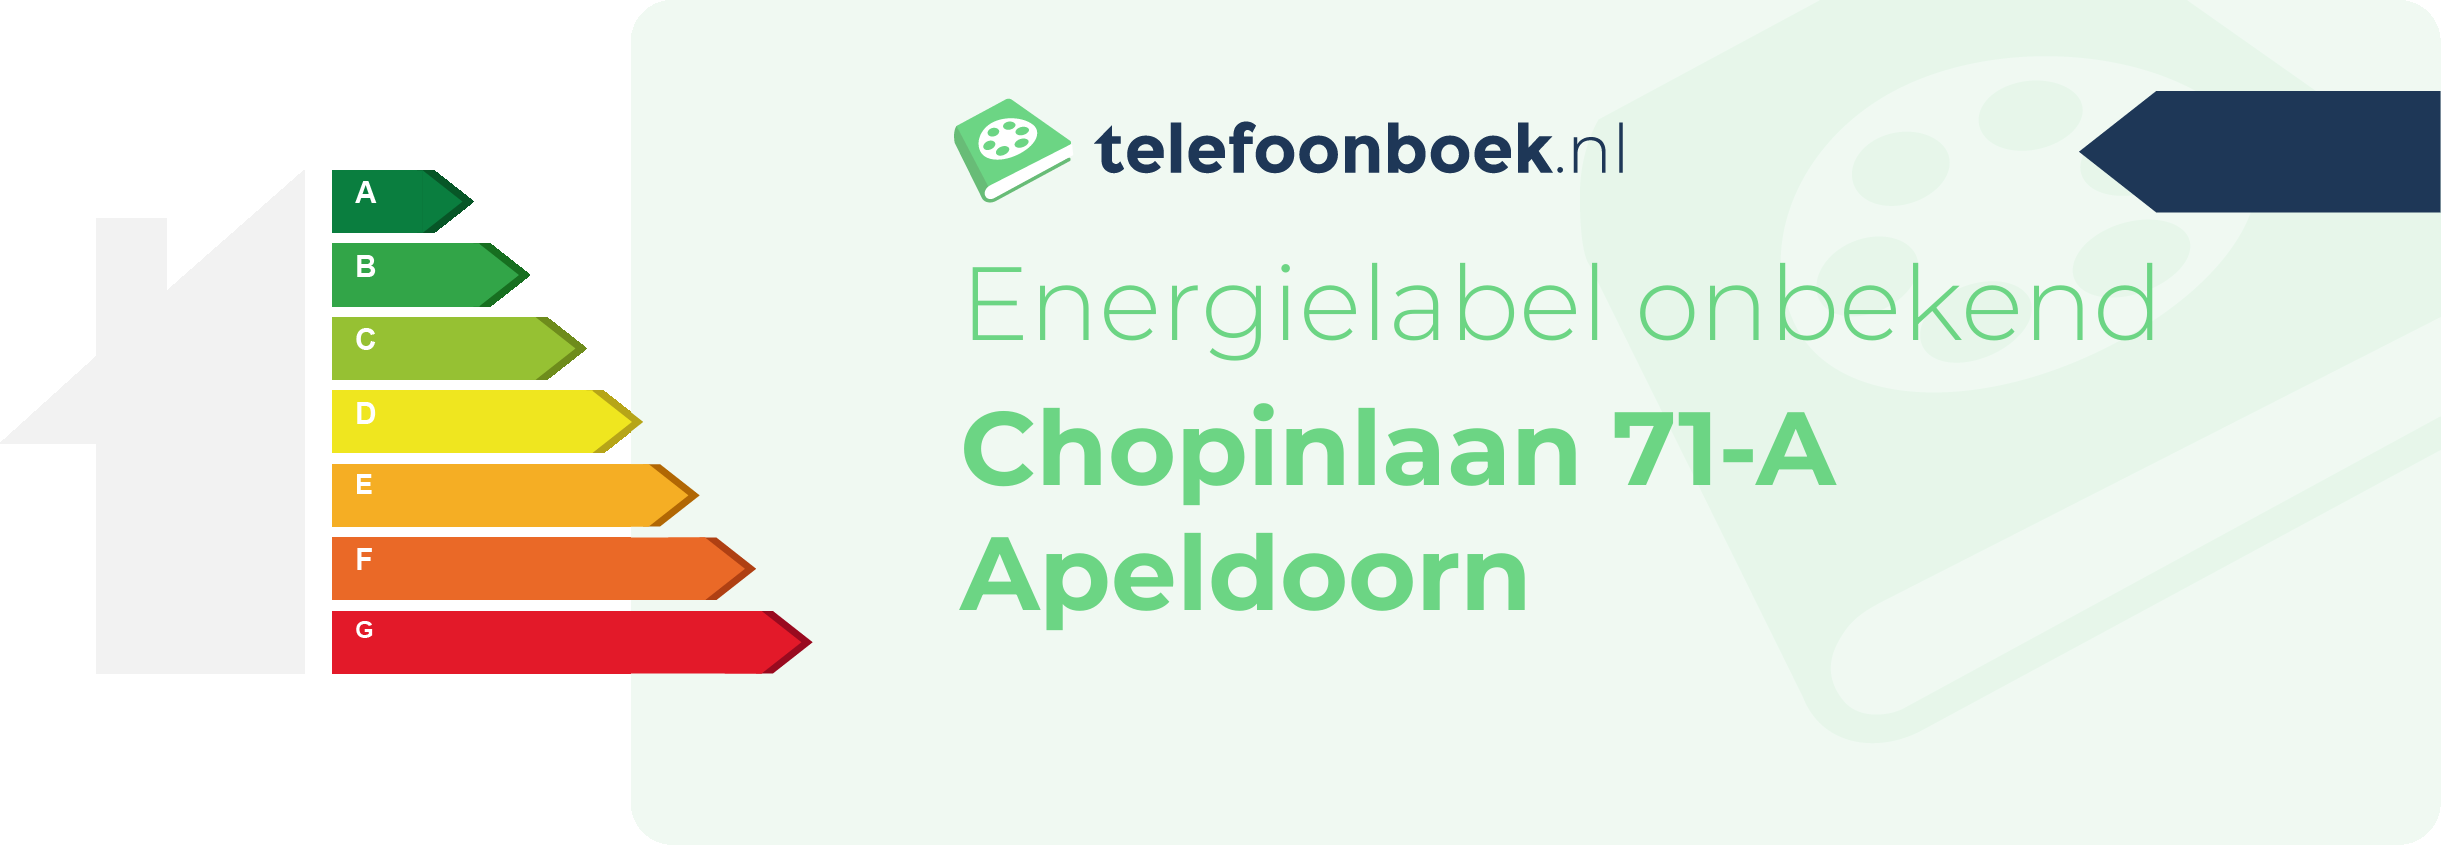 Energielabel Chopinlaan 71-A Apeldoorn